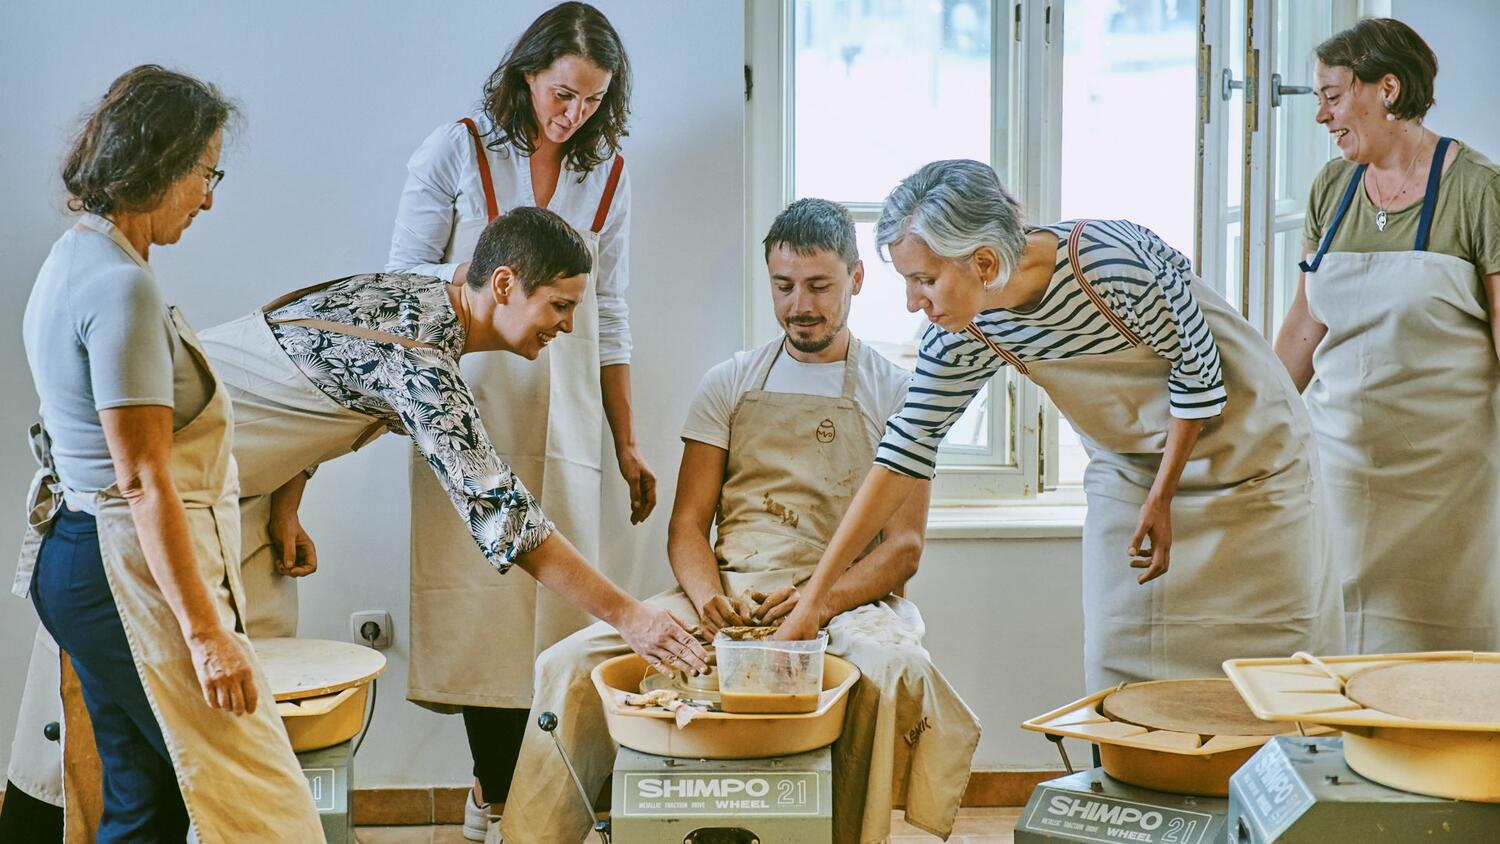 Doživetje tradicije lončarstva v Ljubljani – delavnica Odprto vreteno; skupina se uči dela na lončarskem vretenu